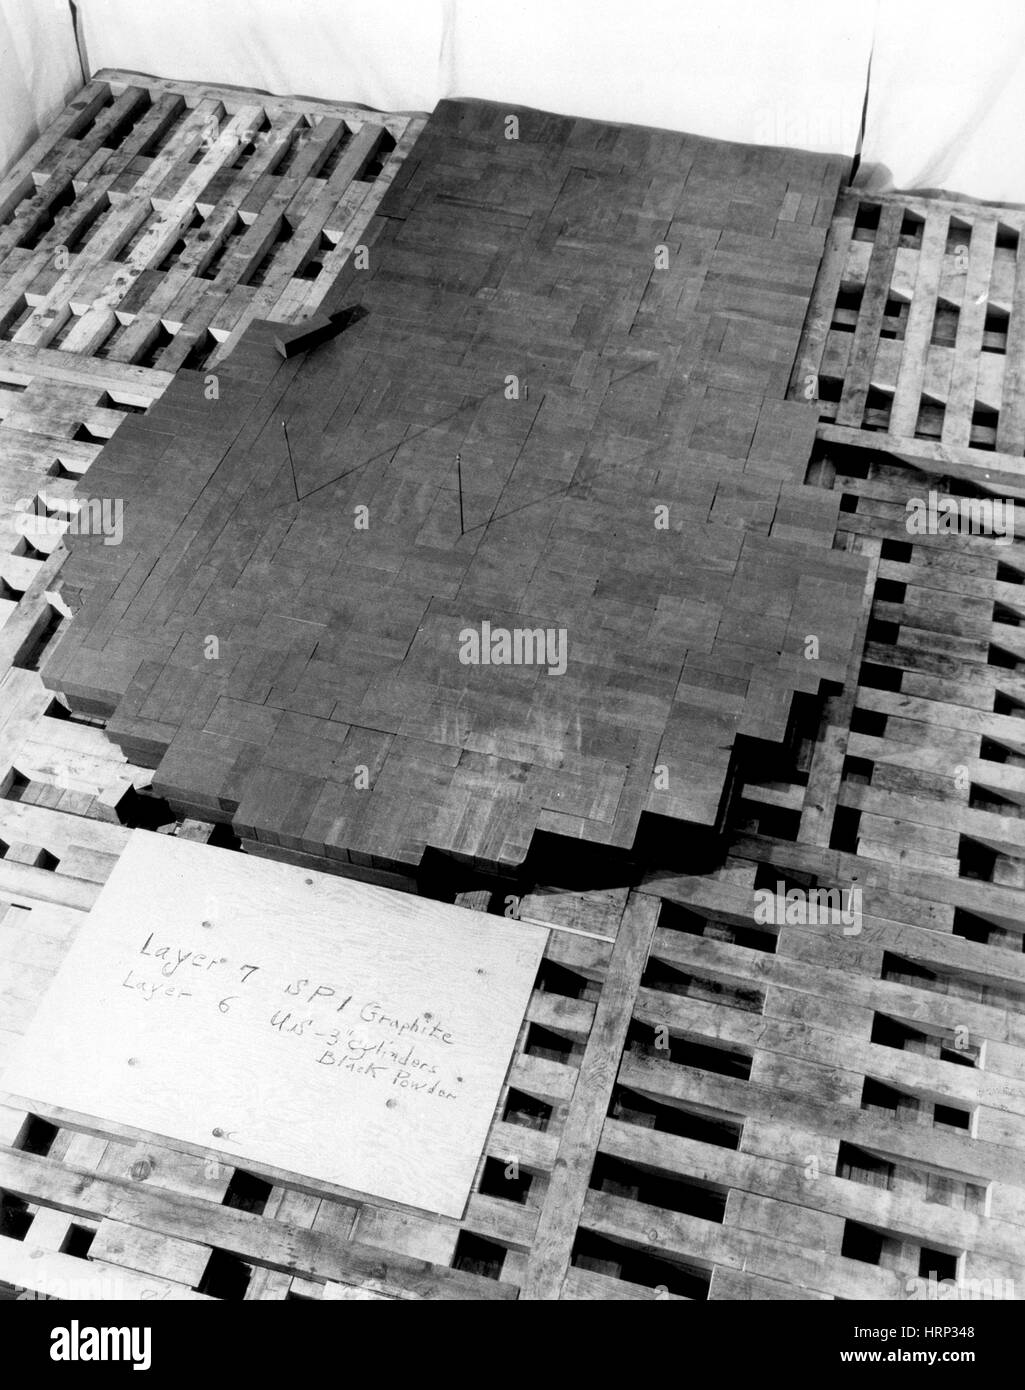 CP-1 lors de l'assemblage. La photographie montre la 7ème couche de blocs de graphite et des bords de la 6ème couche. Chicago Pile-1 (CP-1) a été le premier réacteur nucléaire. La construction de CP-1 faisait partie du projet Manhattan, et a été menée par le Laboratoire métallurgique à l'Université de Chicago. Banque D'Images